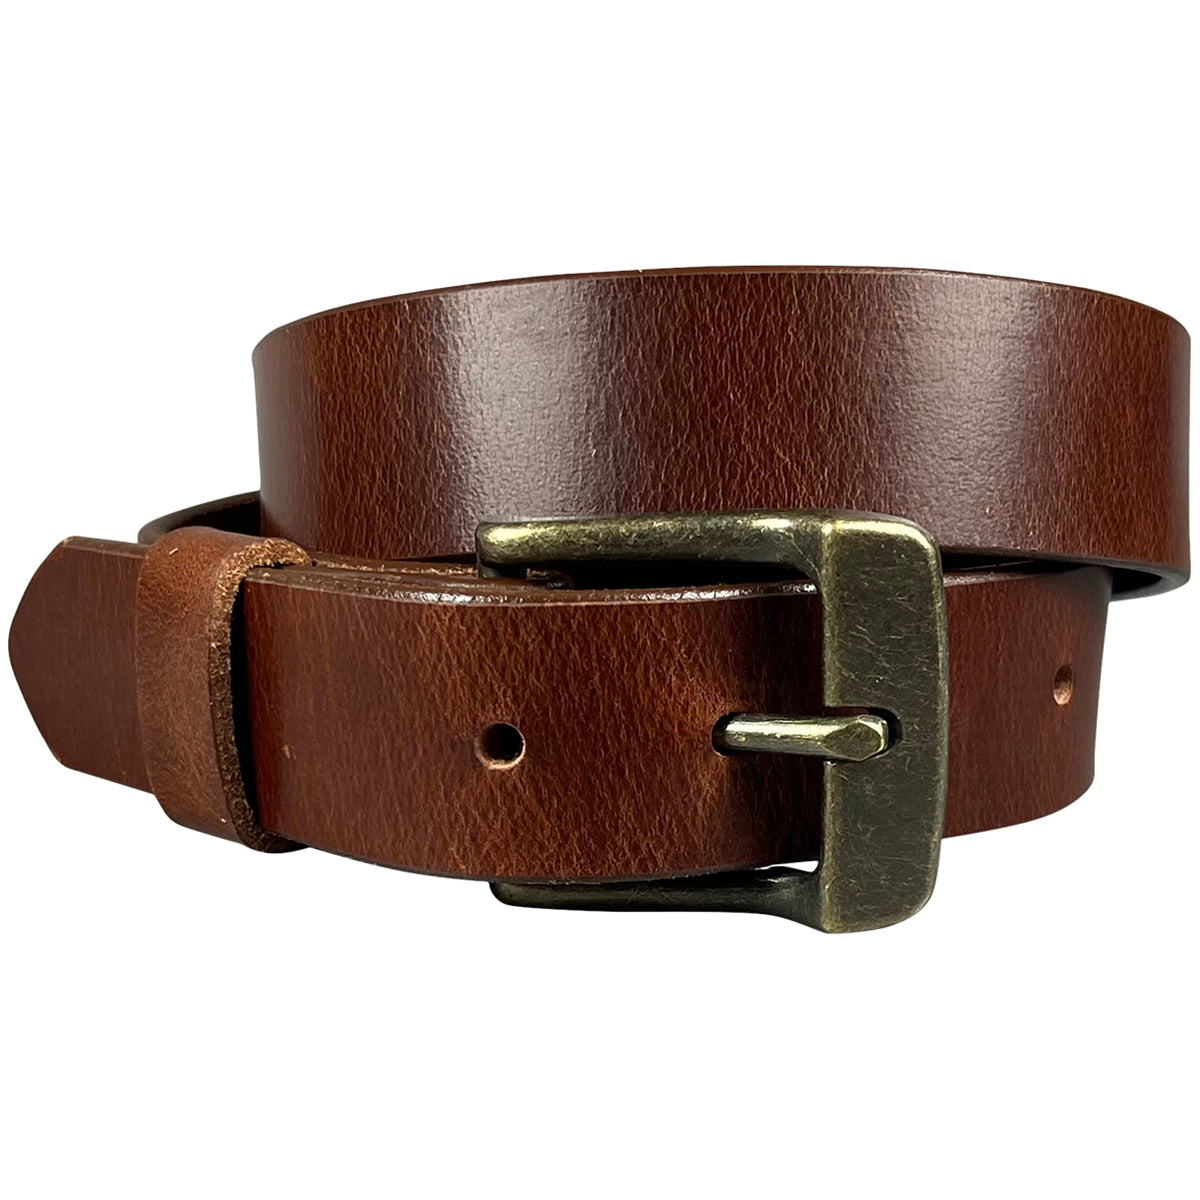 1.25(32mm) Men's Cognac Full Grain Leather Belt Handmade in